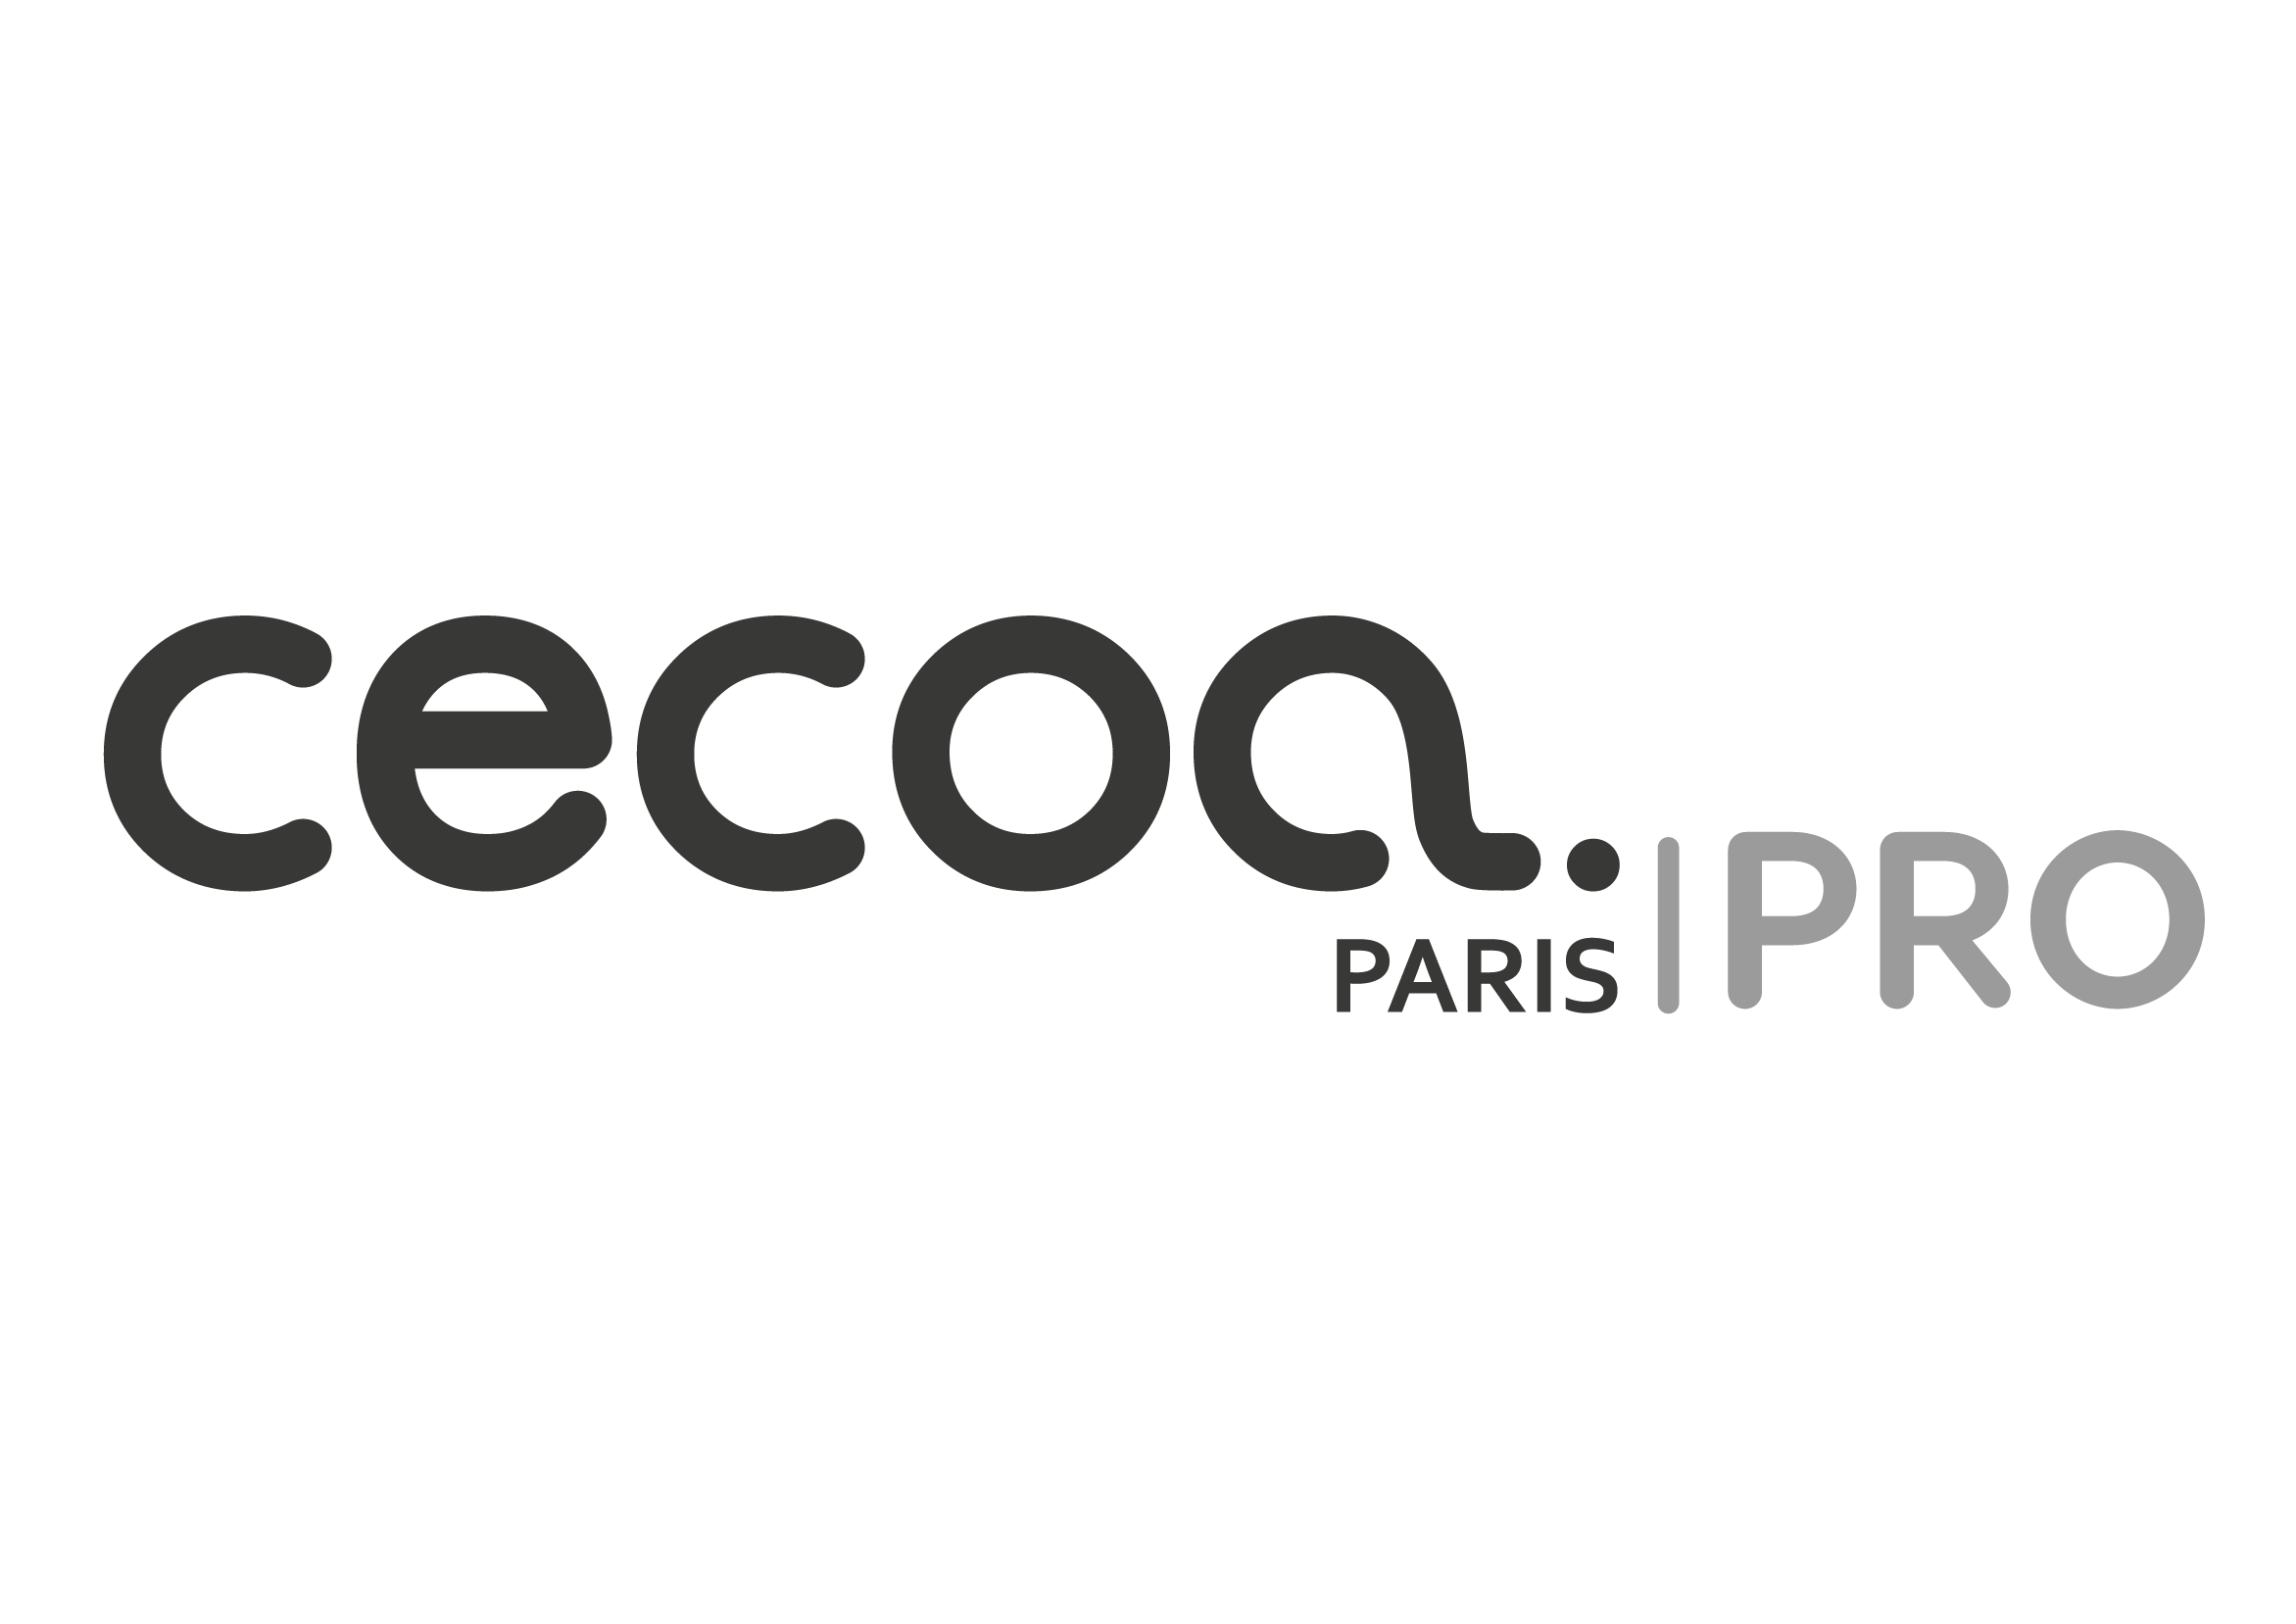 Cécoa Paris Pro